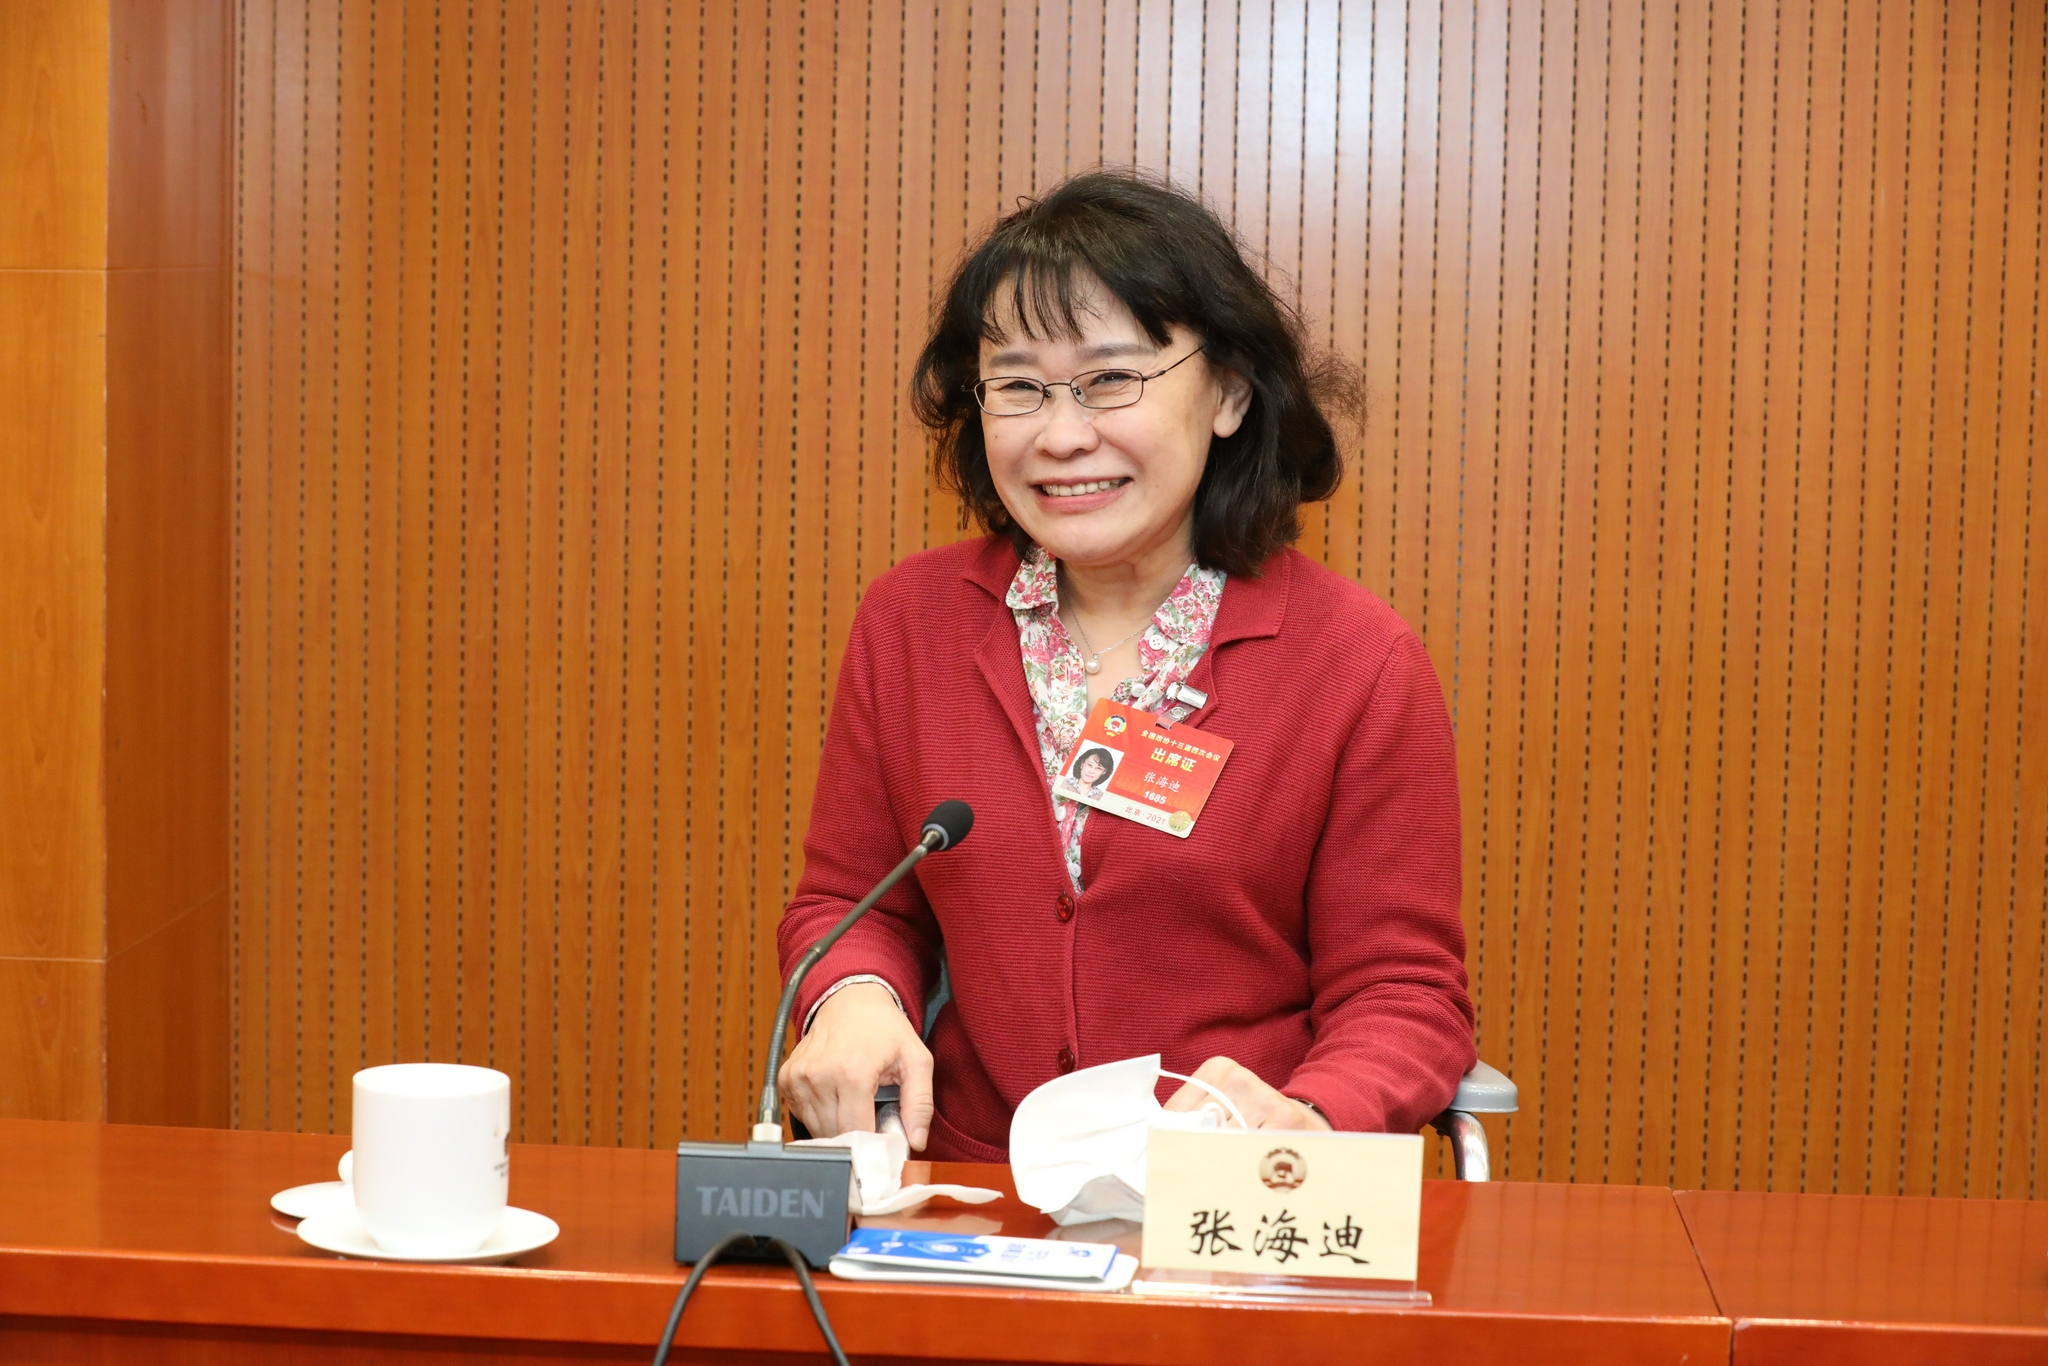 【重点关注】张海迪代表残疾人权利运动在人权理事会发出中国声音、倡导国际合作